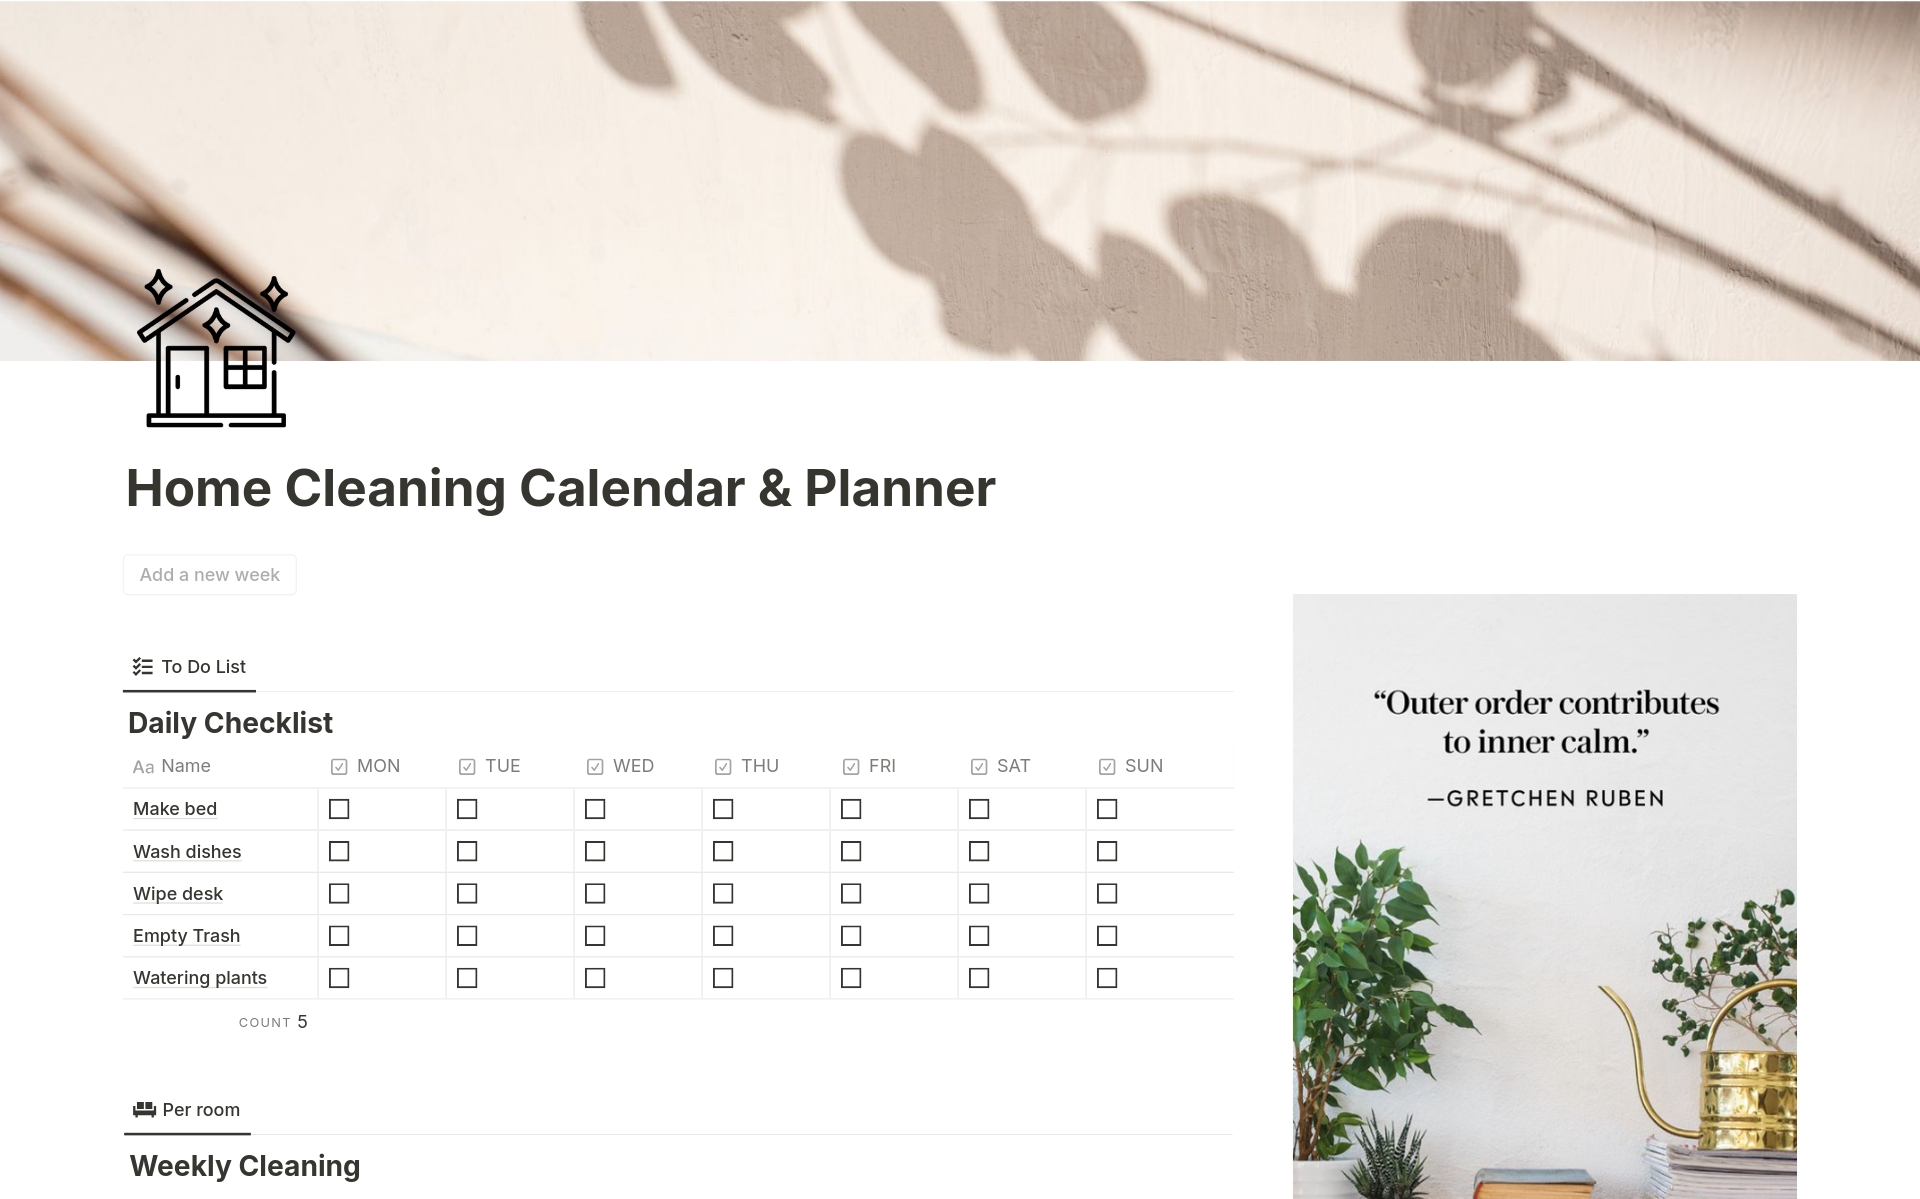 Uma prévia do modelo para Home Cleaning Calendar & Planner